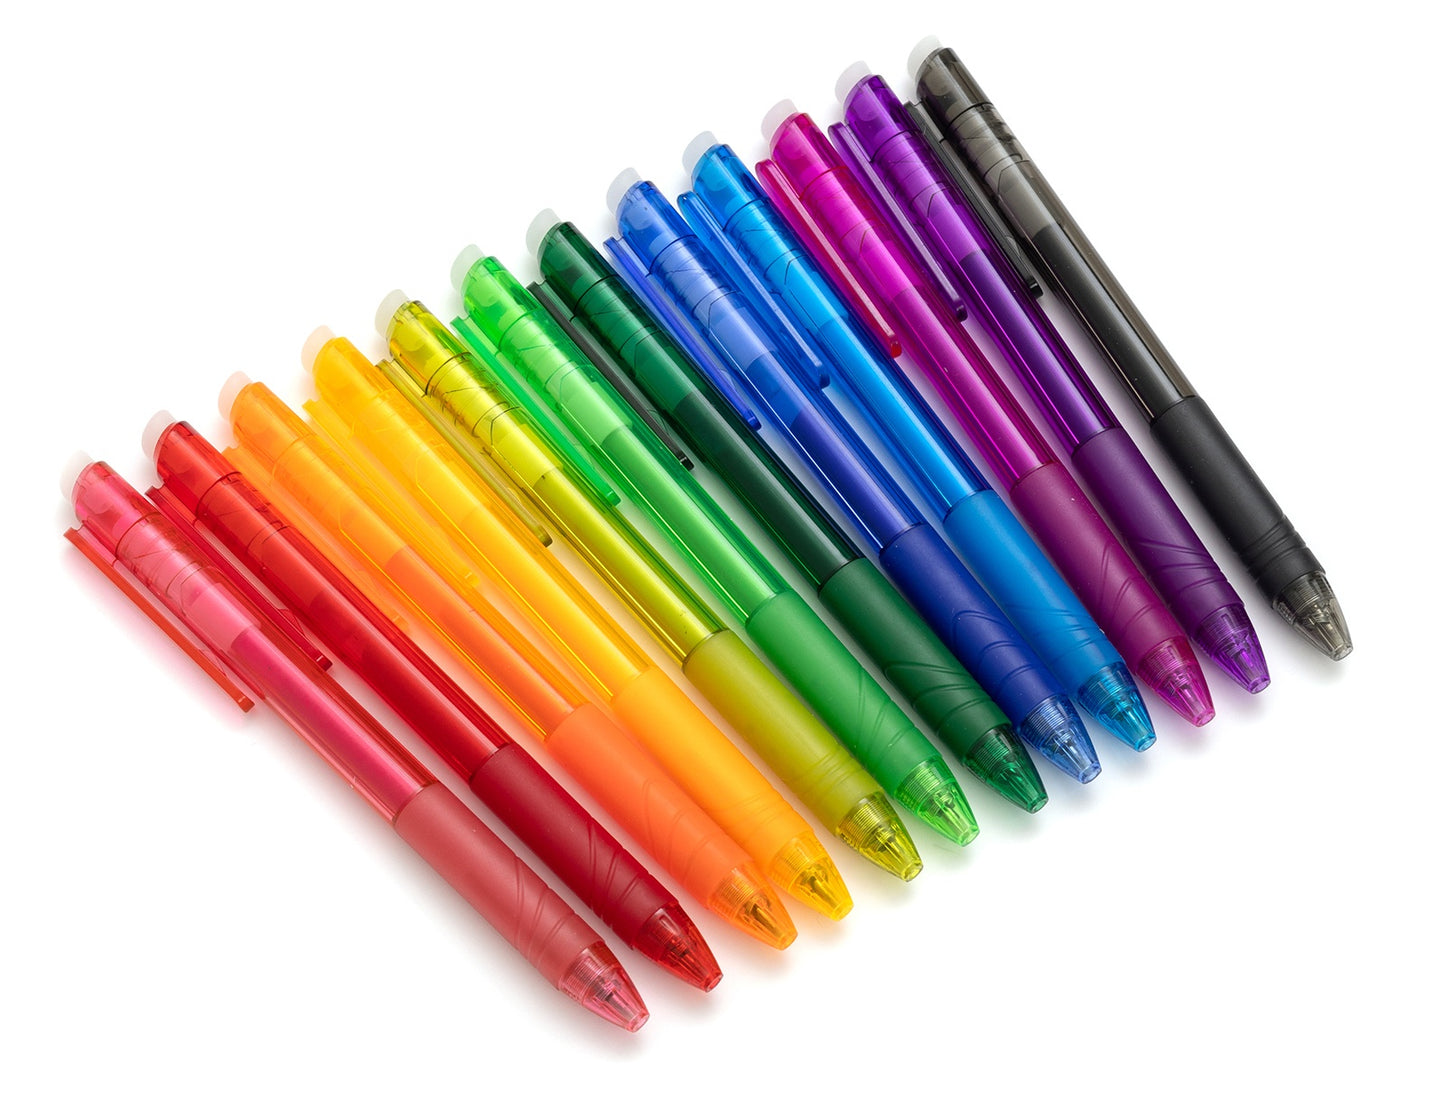 AC Point Planner Erasable Gel Pens 12/Pkg-Assorted Colors